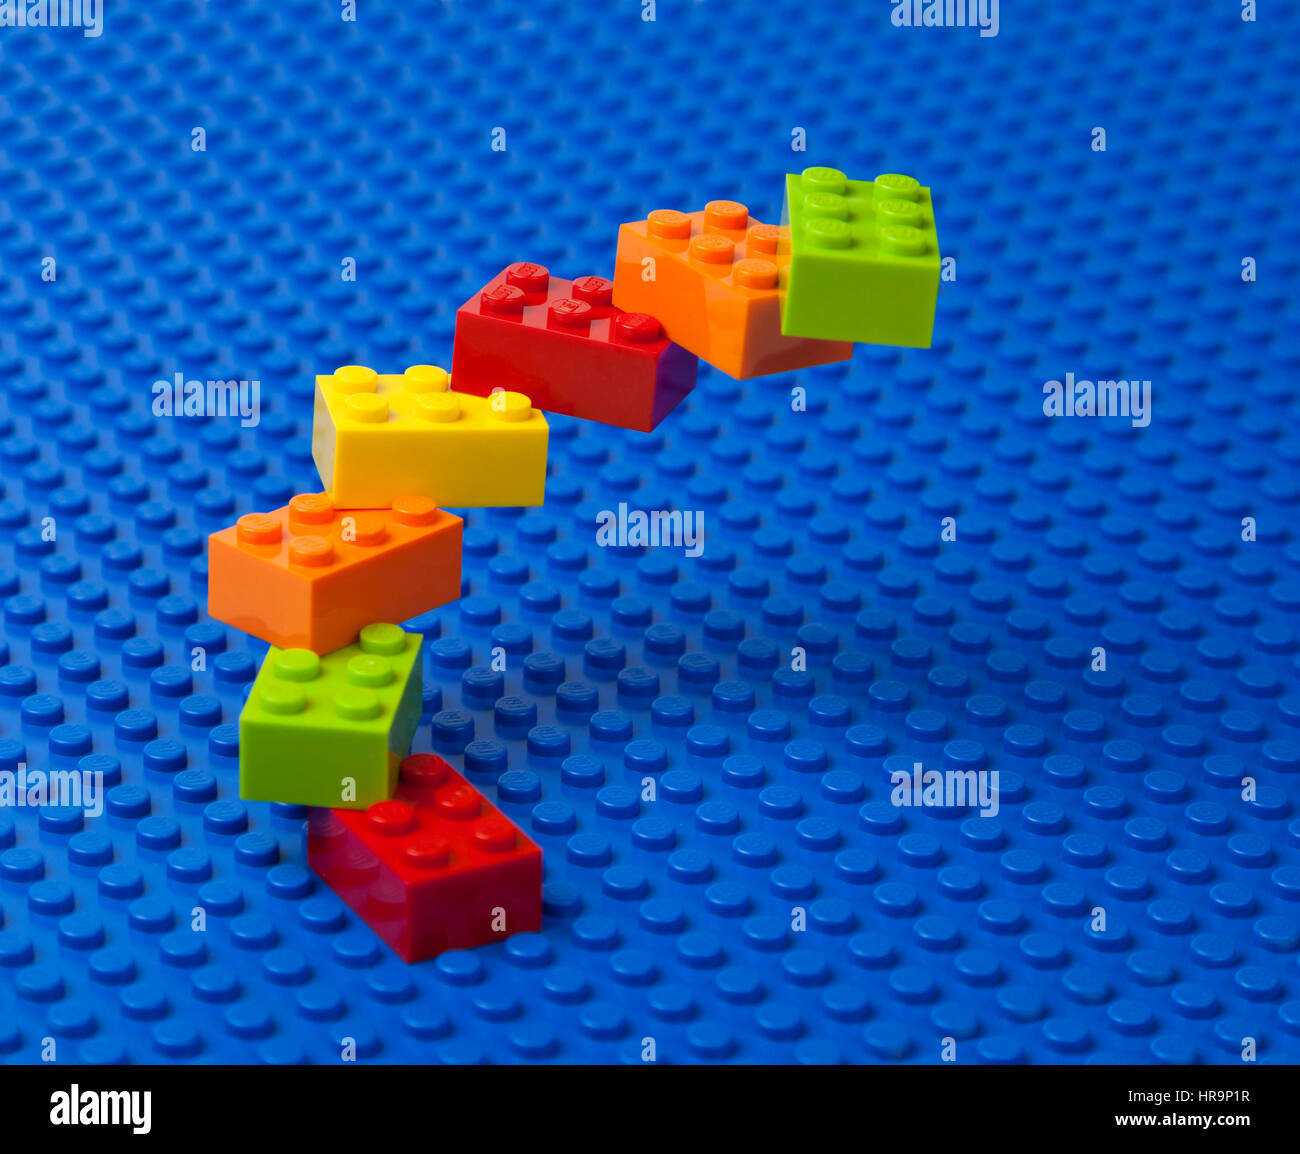 Espiral ascendente de escaleras o construcción de ladrillos LEGO entrelazados en una placa base de Lego azul. Foto de stock